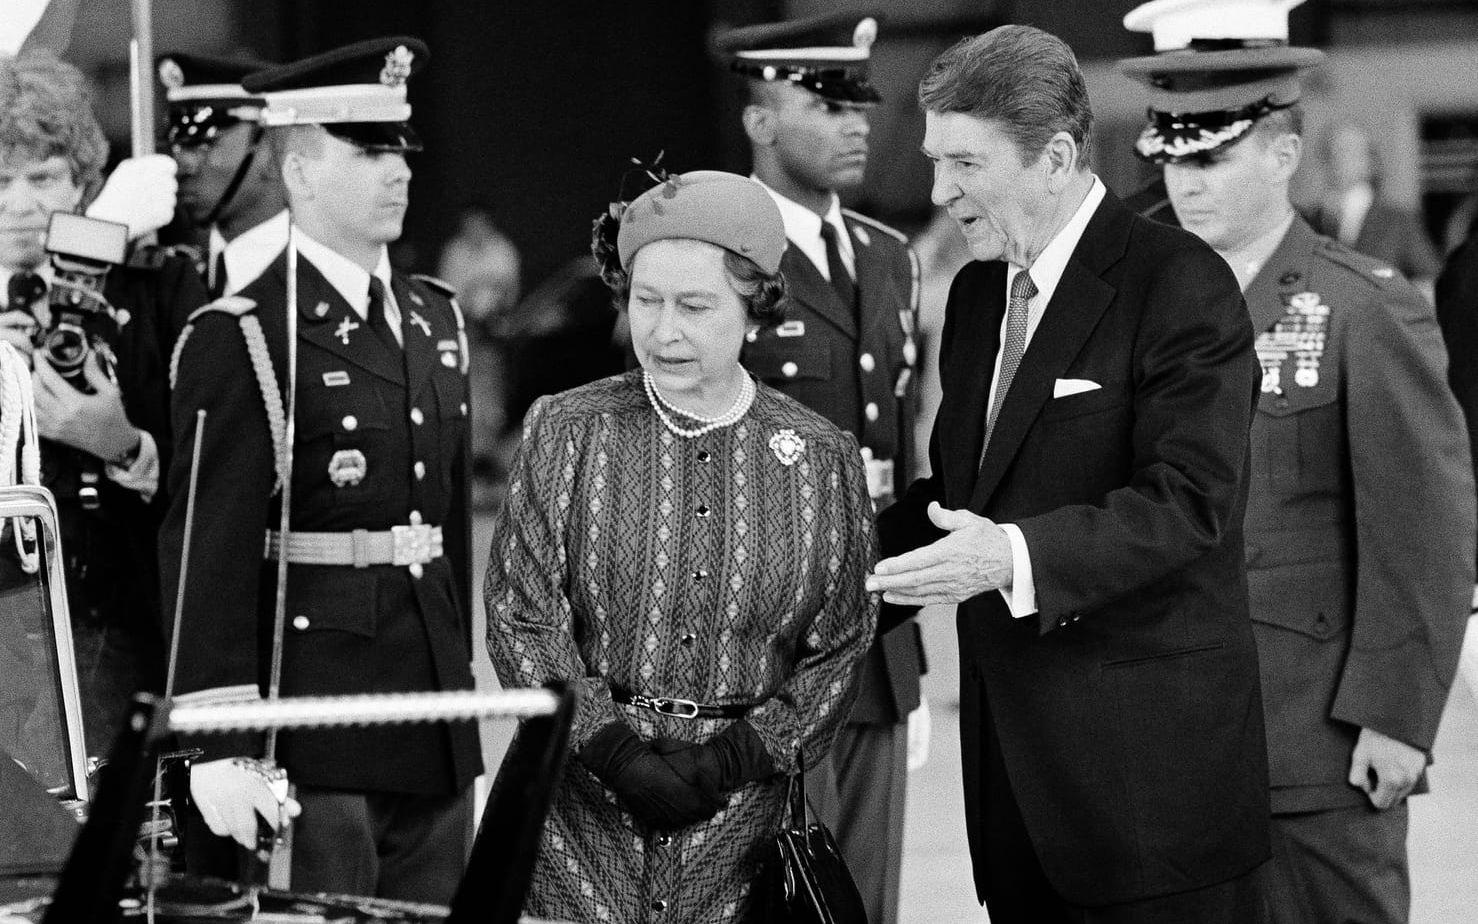 President Ronald Reagan eskorterar drottning Elizabeth II till hennes limousin i Santa Barbara, Kalifornien, 1983. Inför besöket hade en man hotat att mörda drottningen, enligt FBI.